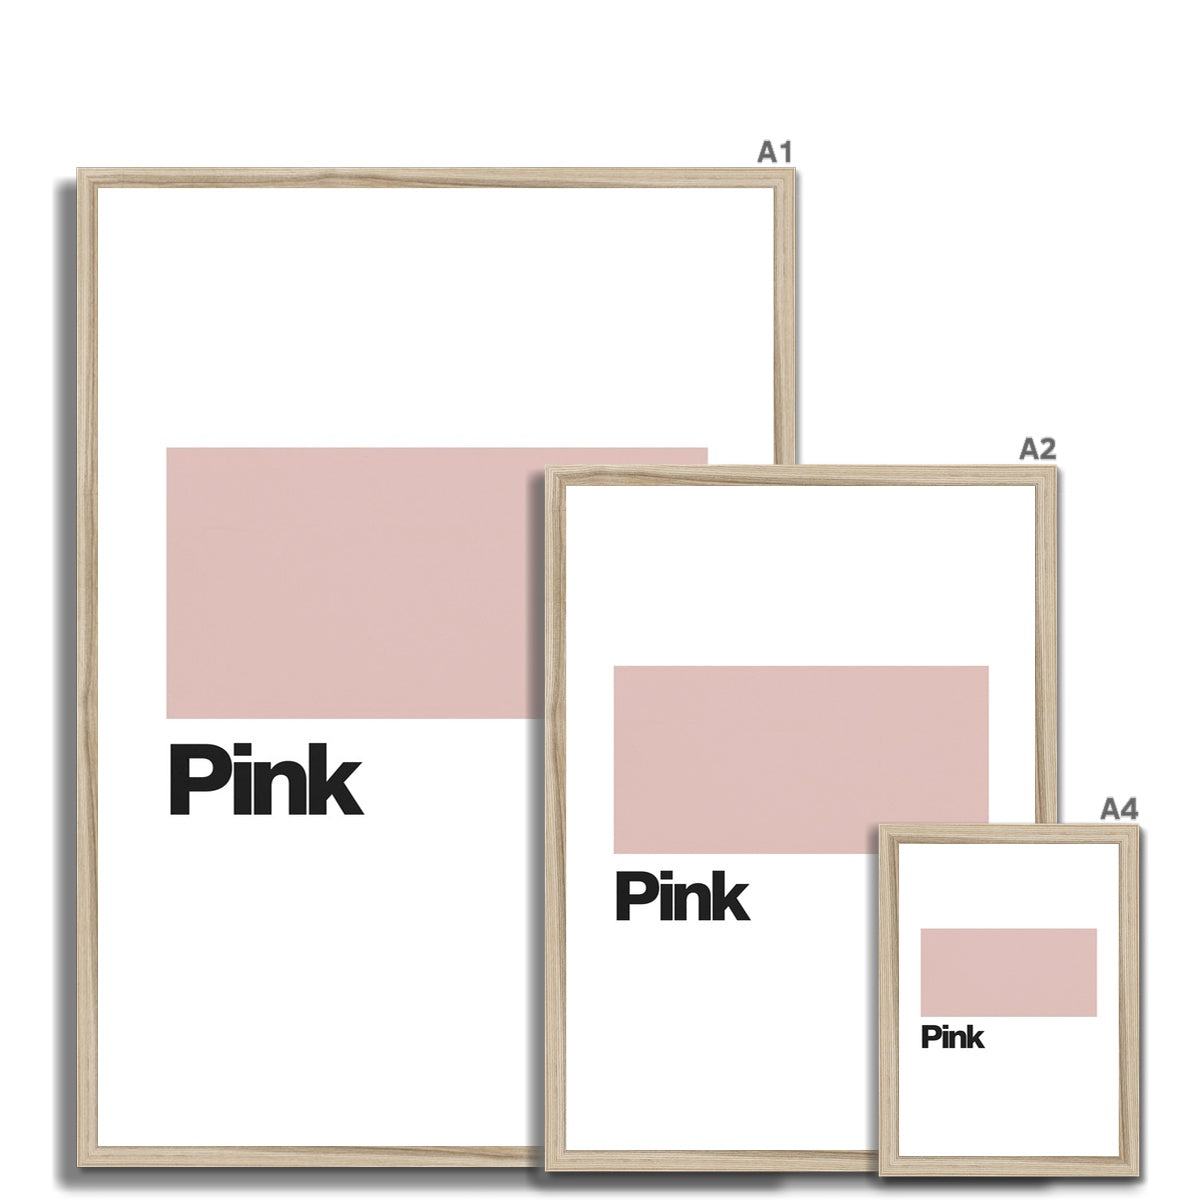 Pink Framed Print